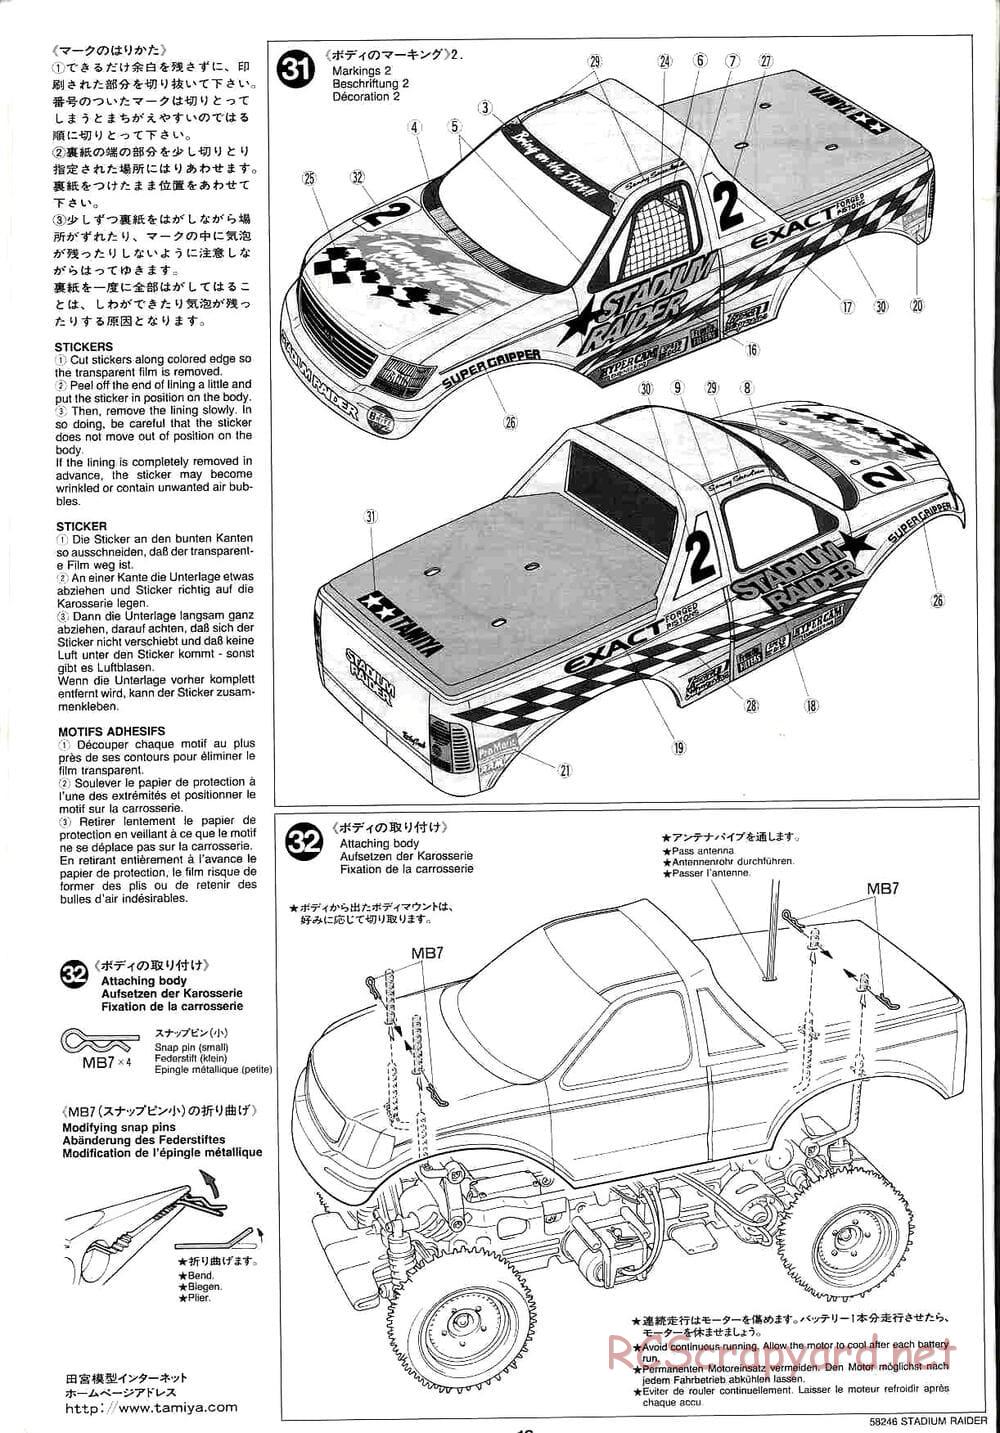 Tamiya - Stadium Raider - TL-01 Chassis - Manual - Page 18